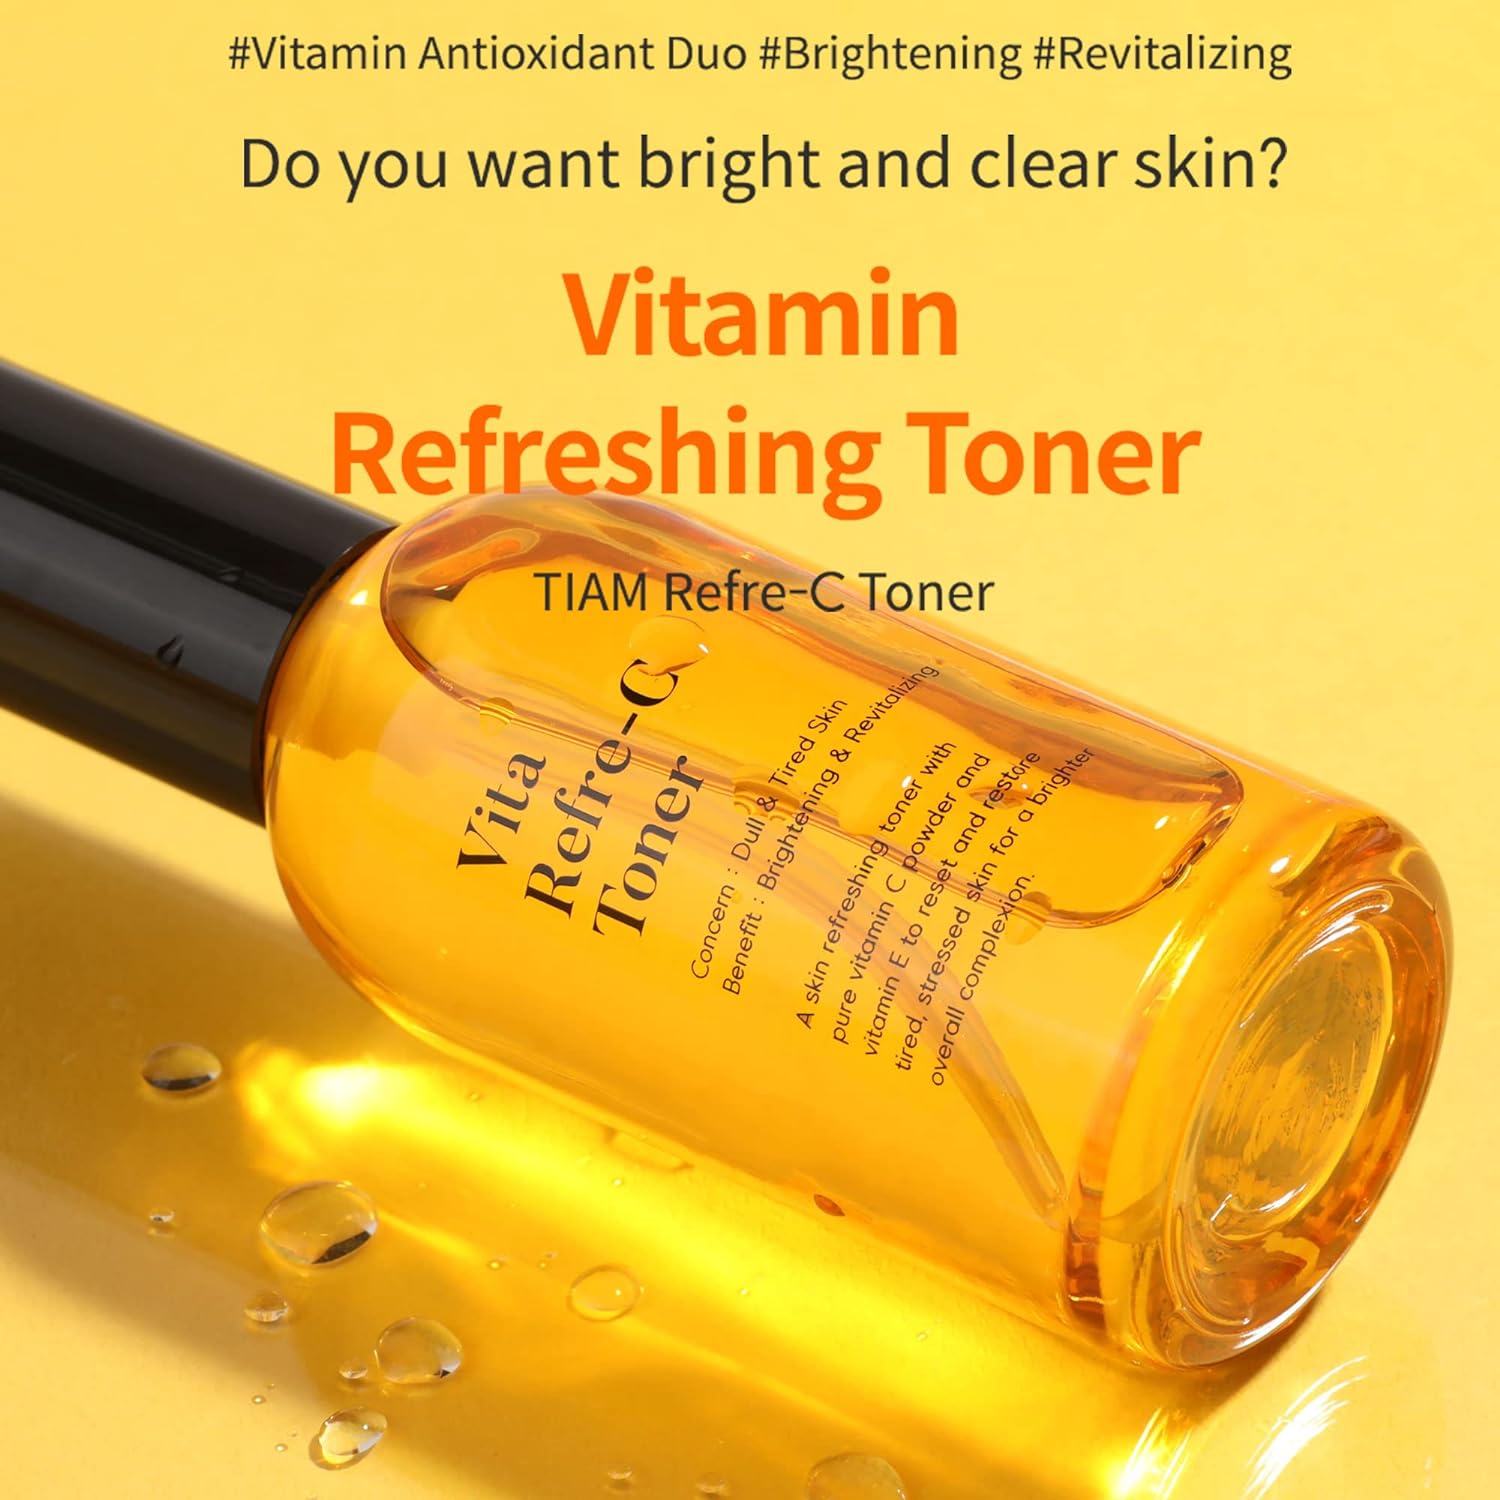 TIAM Vita Refre-C Toner Pure Vitamin C and Vitamin E Toner (100ml)